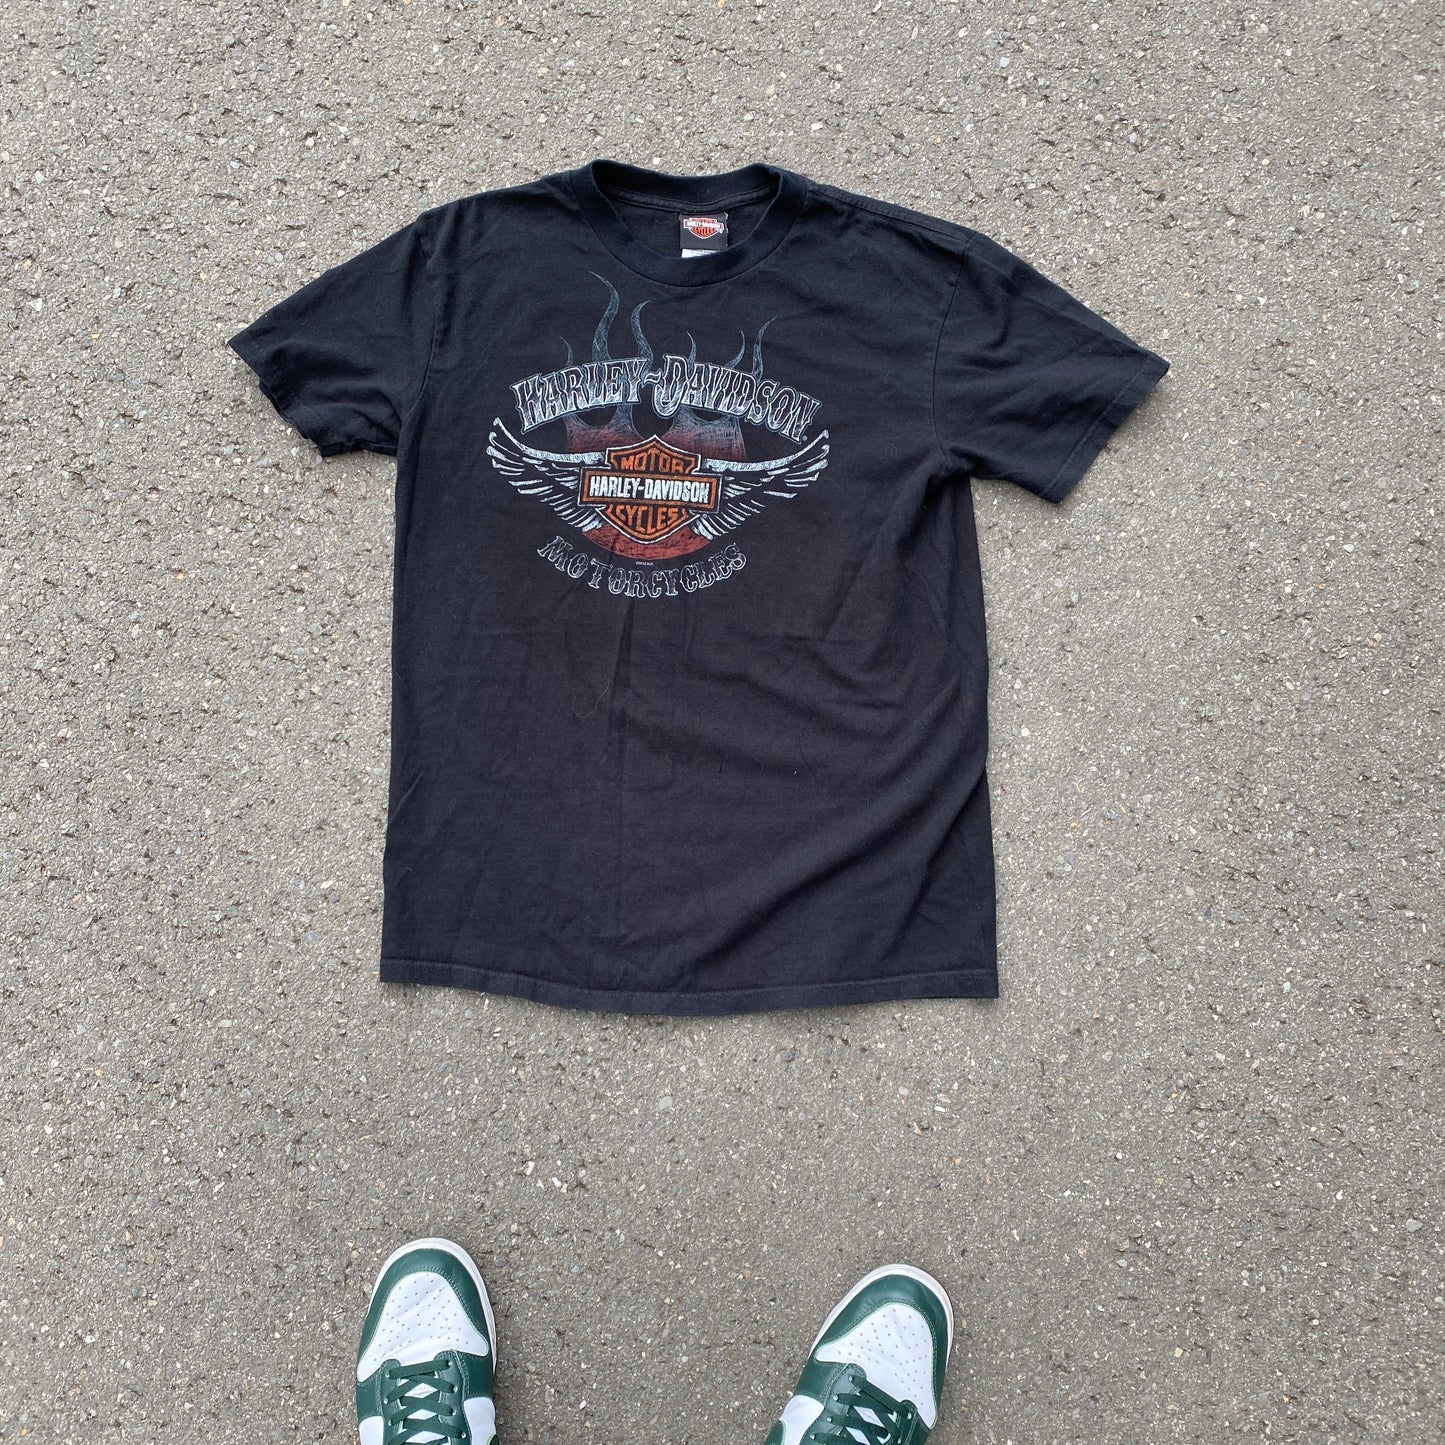 Harley Davidson 2012 New York t-shirt (S)